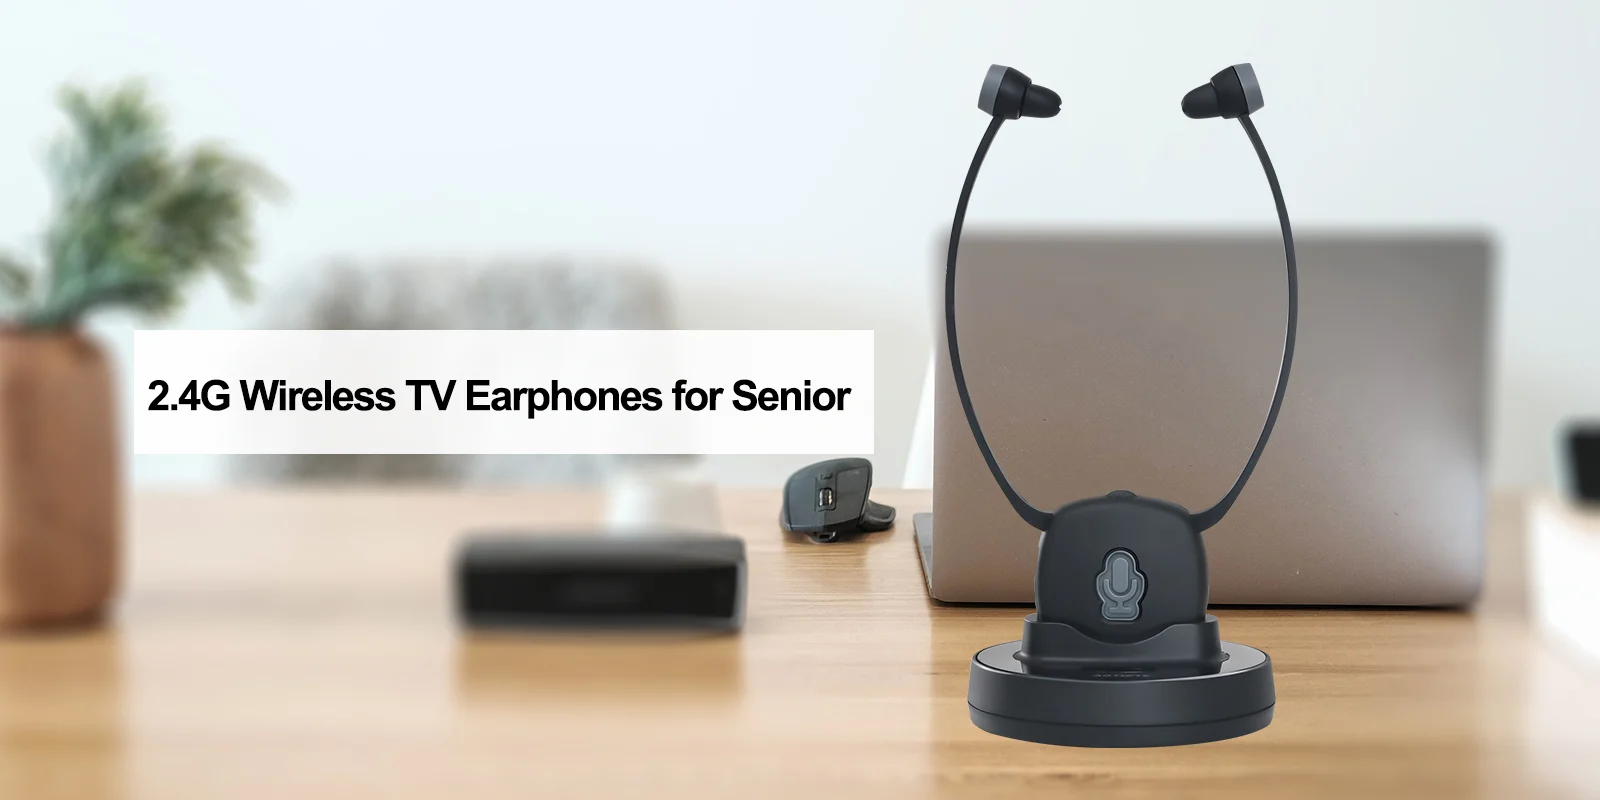 2.4G wireless TV headphone for seniors